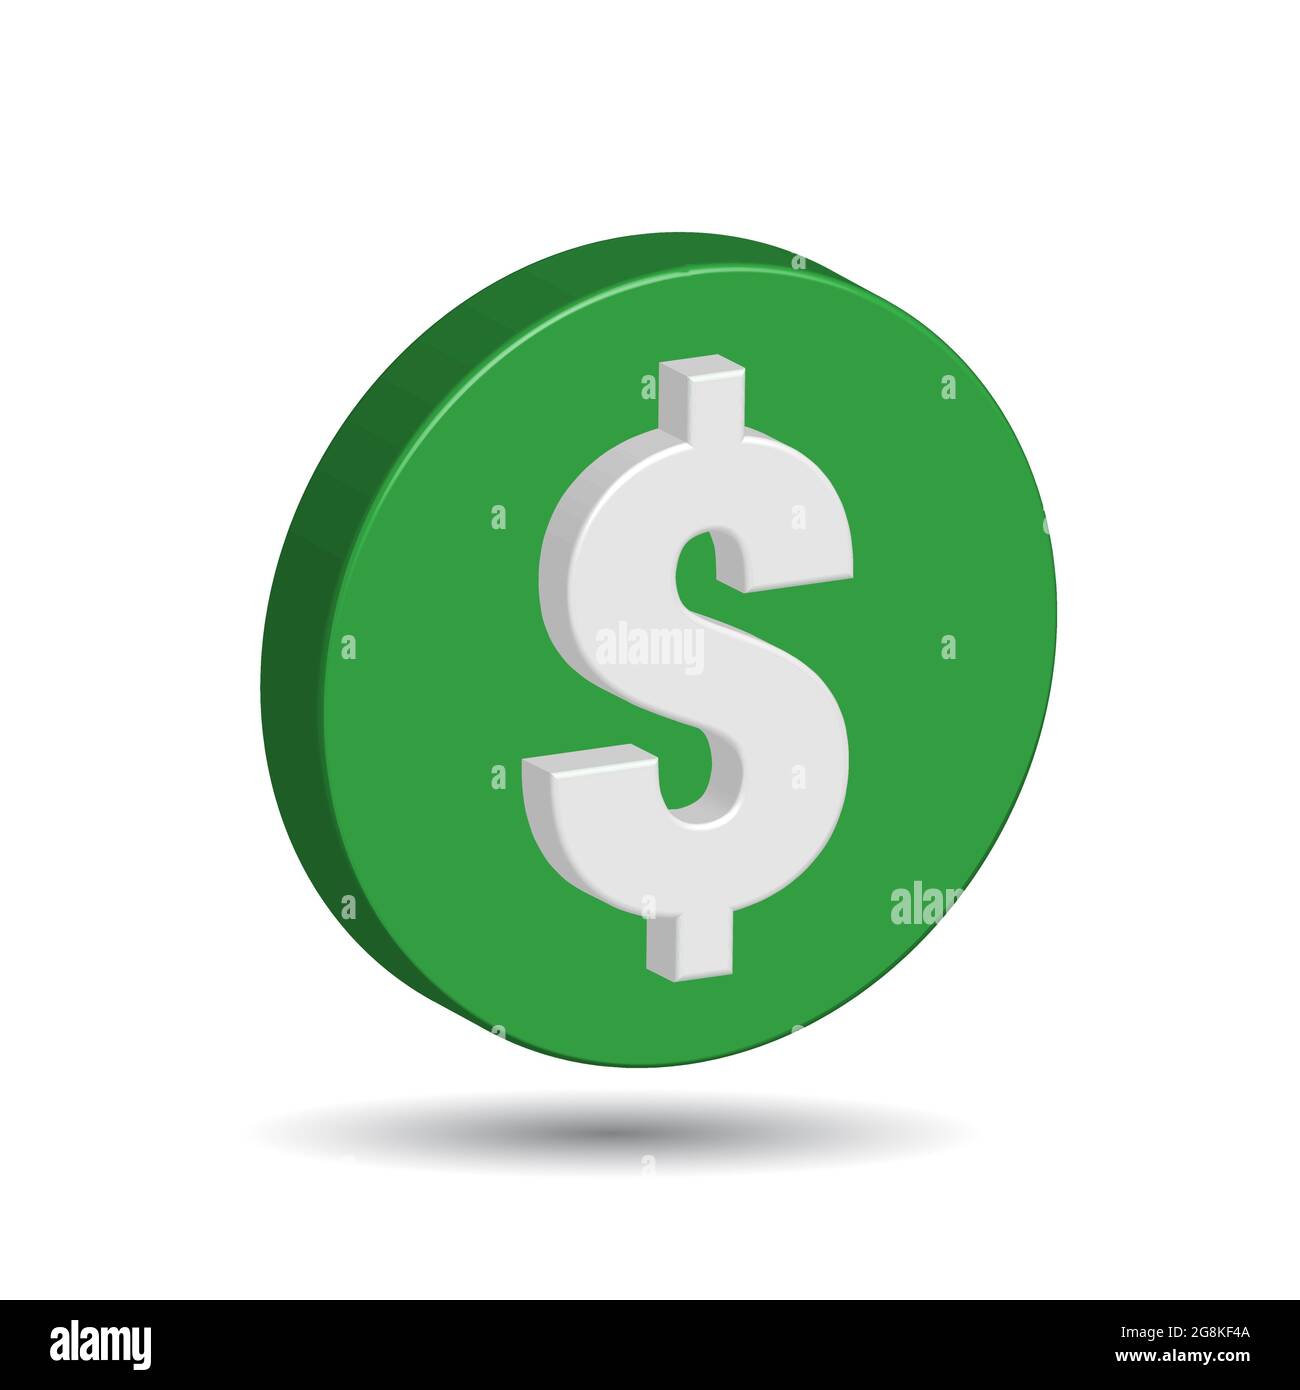 Pièce en plastique vert avec panneau dollar américain isolé sur fond blanc. Le symbole monétaire des États-Unis. Vecteur 3D simple et minimal Illustration de Vecteur